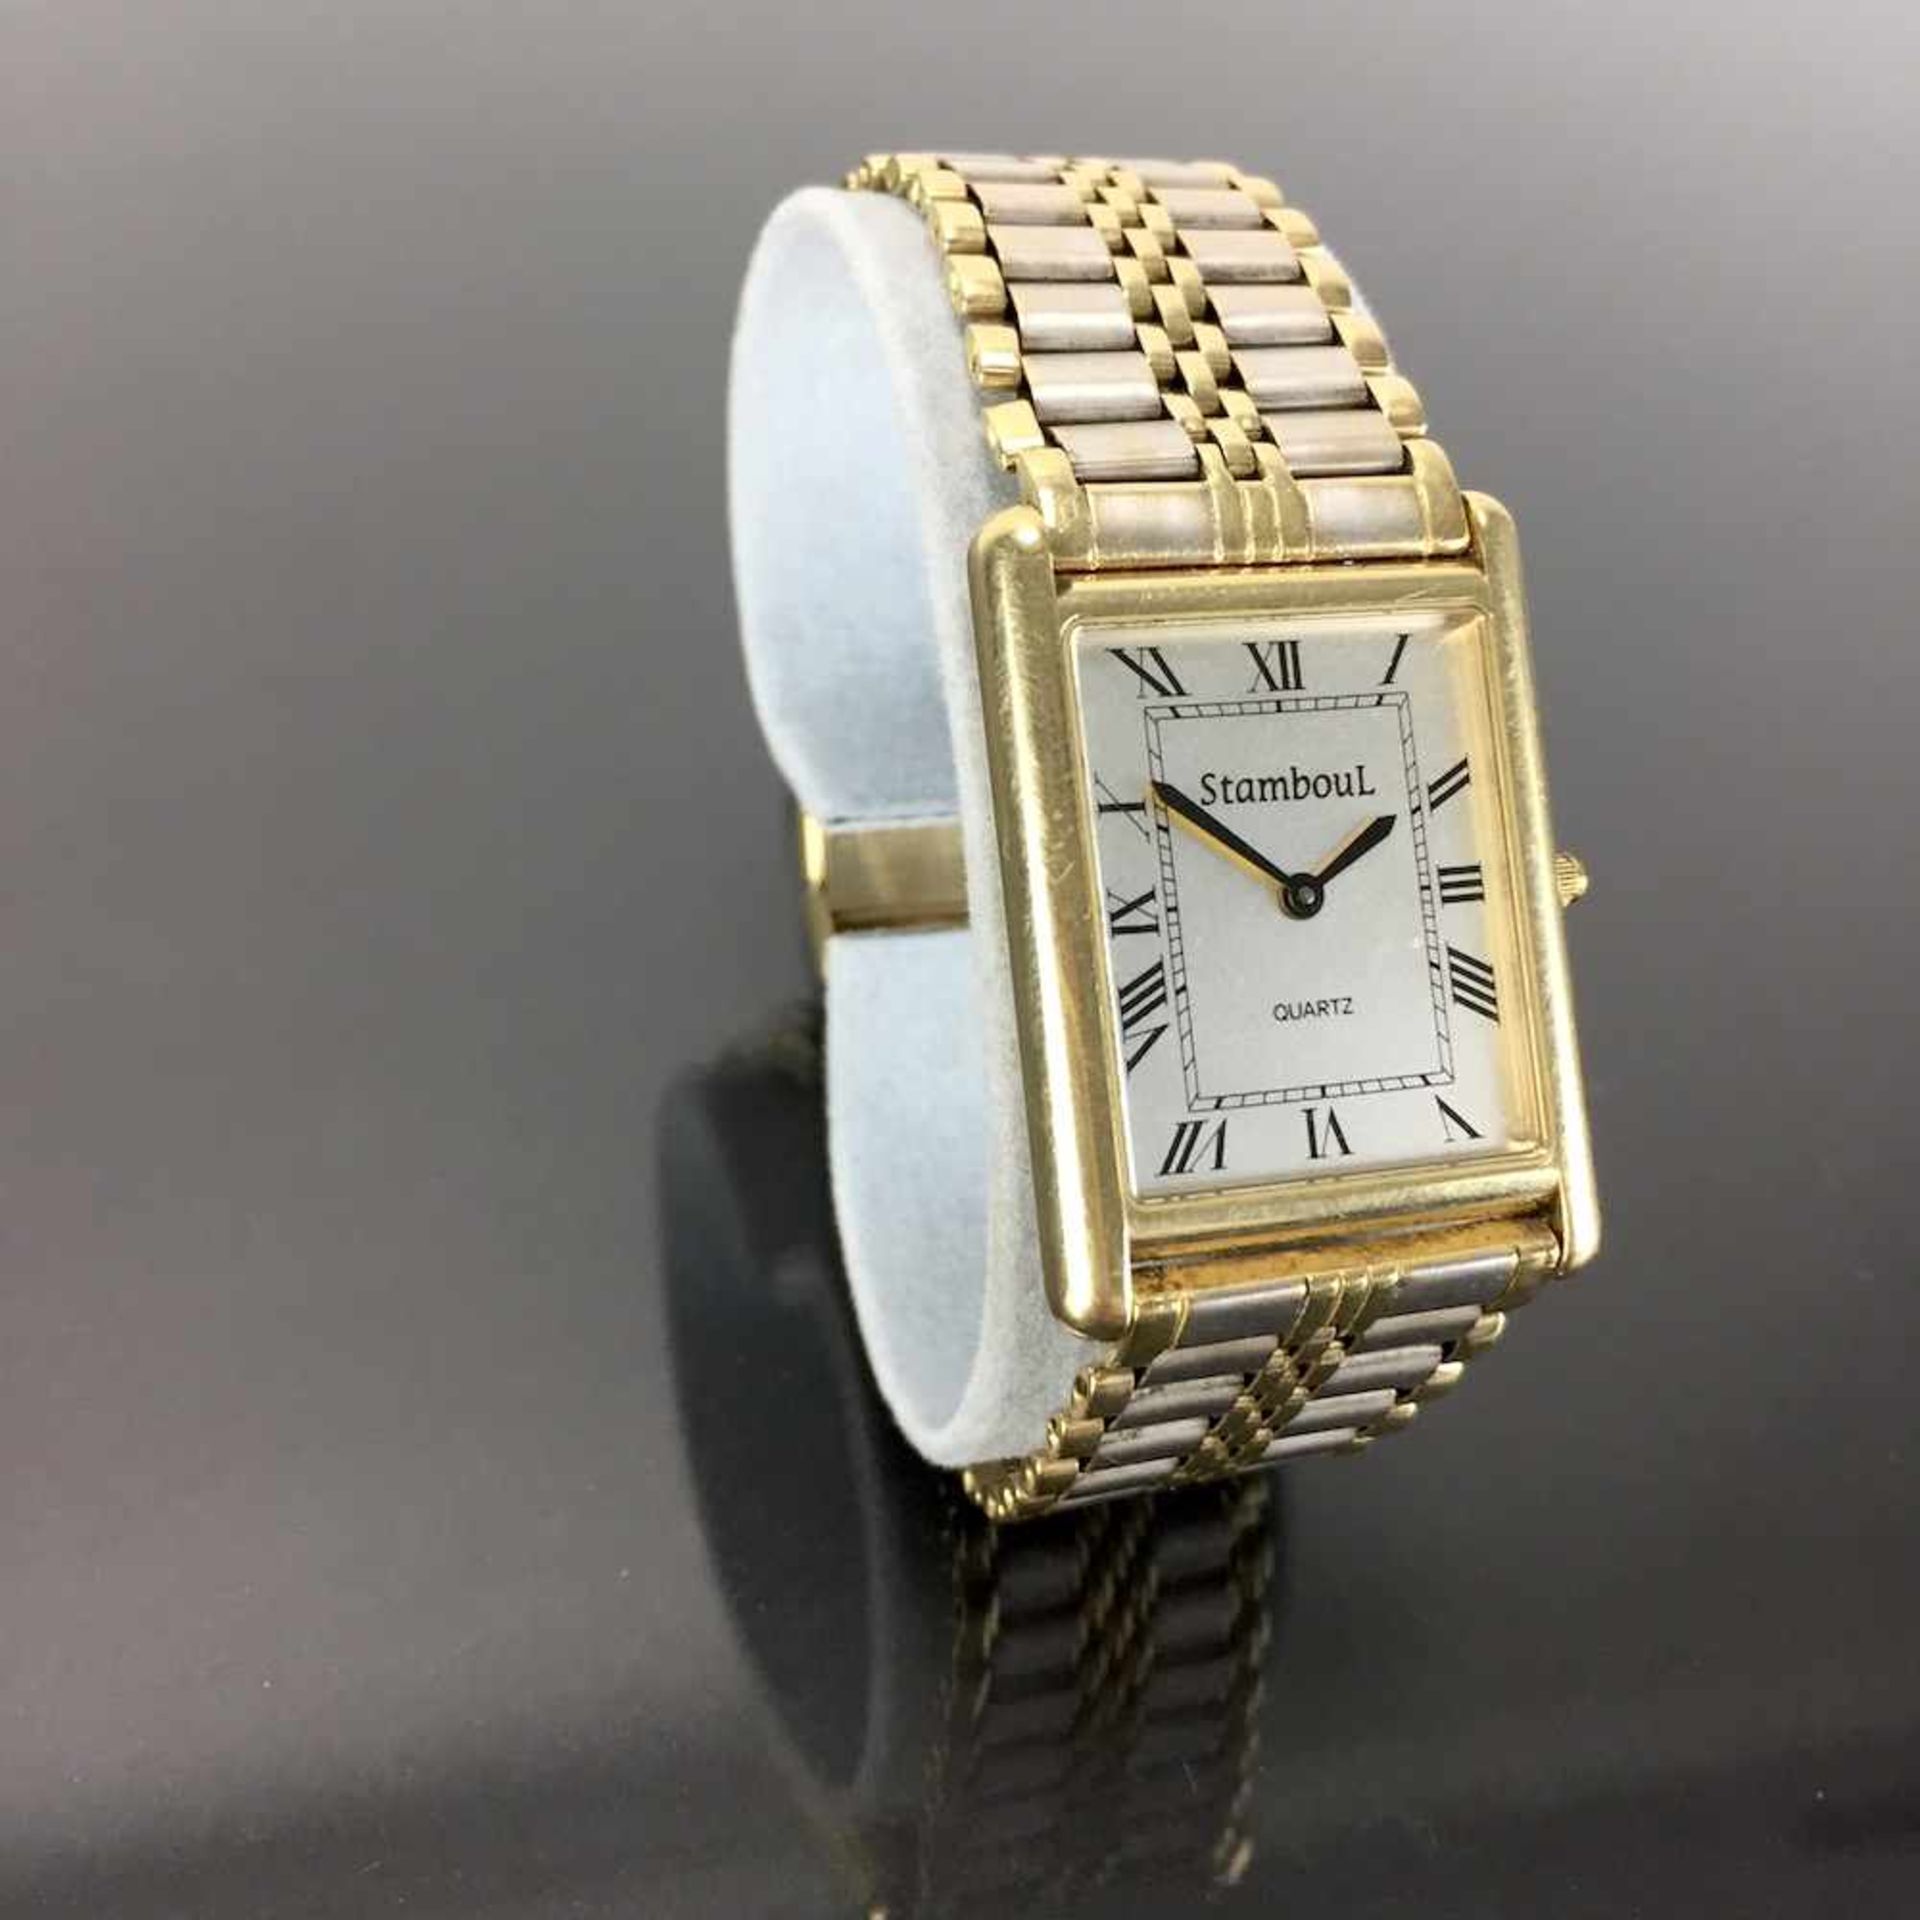 Schwere Herren Armbanduhr: Gold 585 / 14 K.Gemarkt "StambouL | Quartz". Rechteckiges Gehäuse aus - Bild 2 aus 4